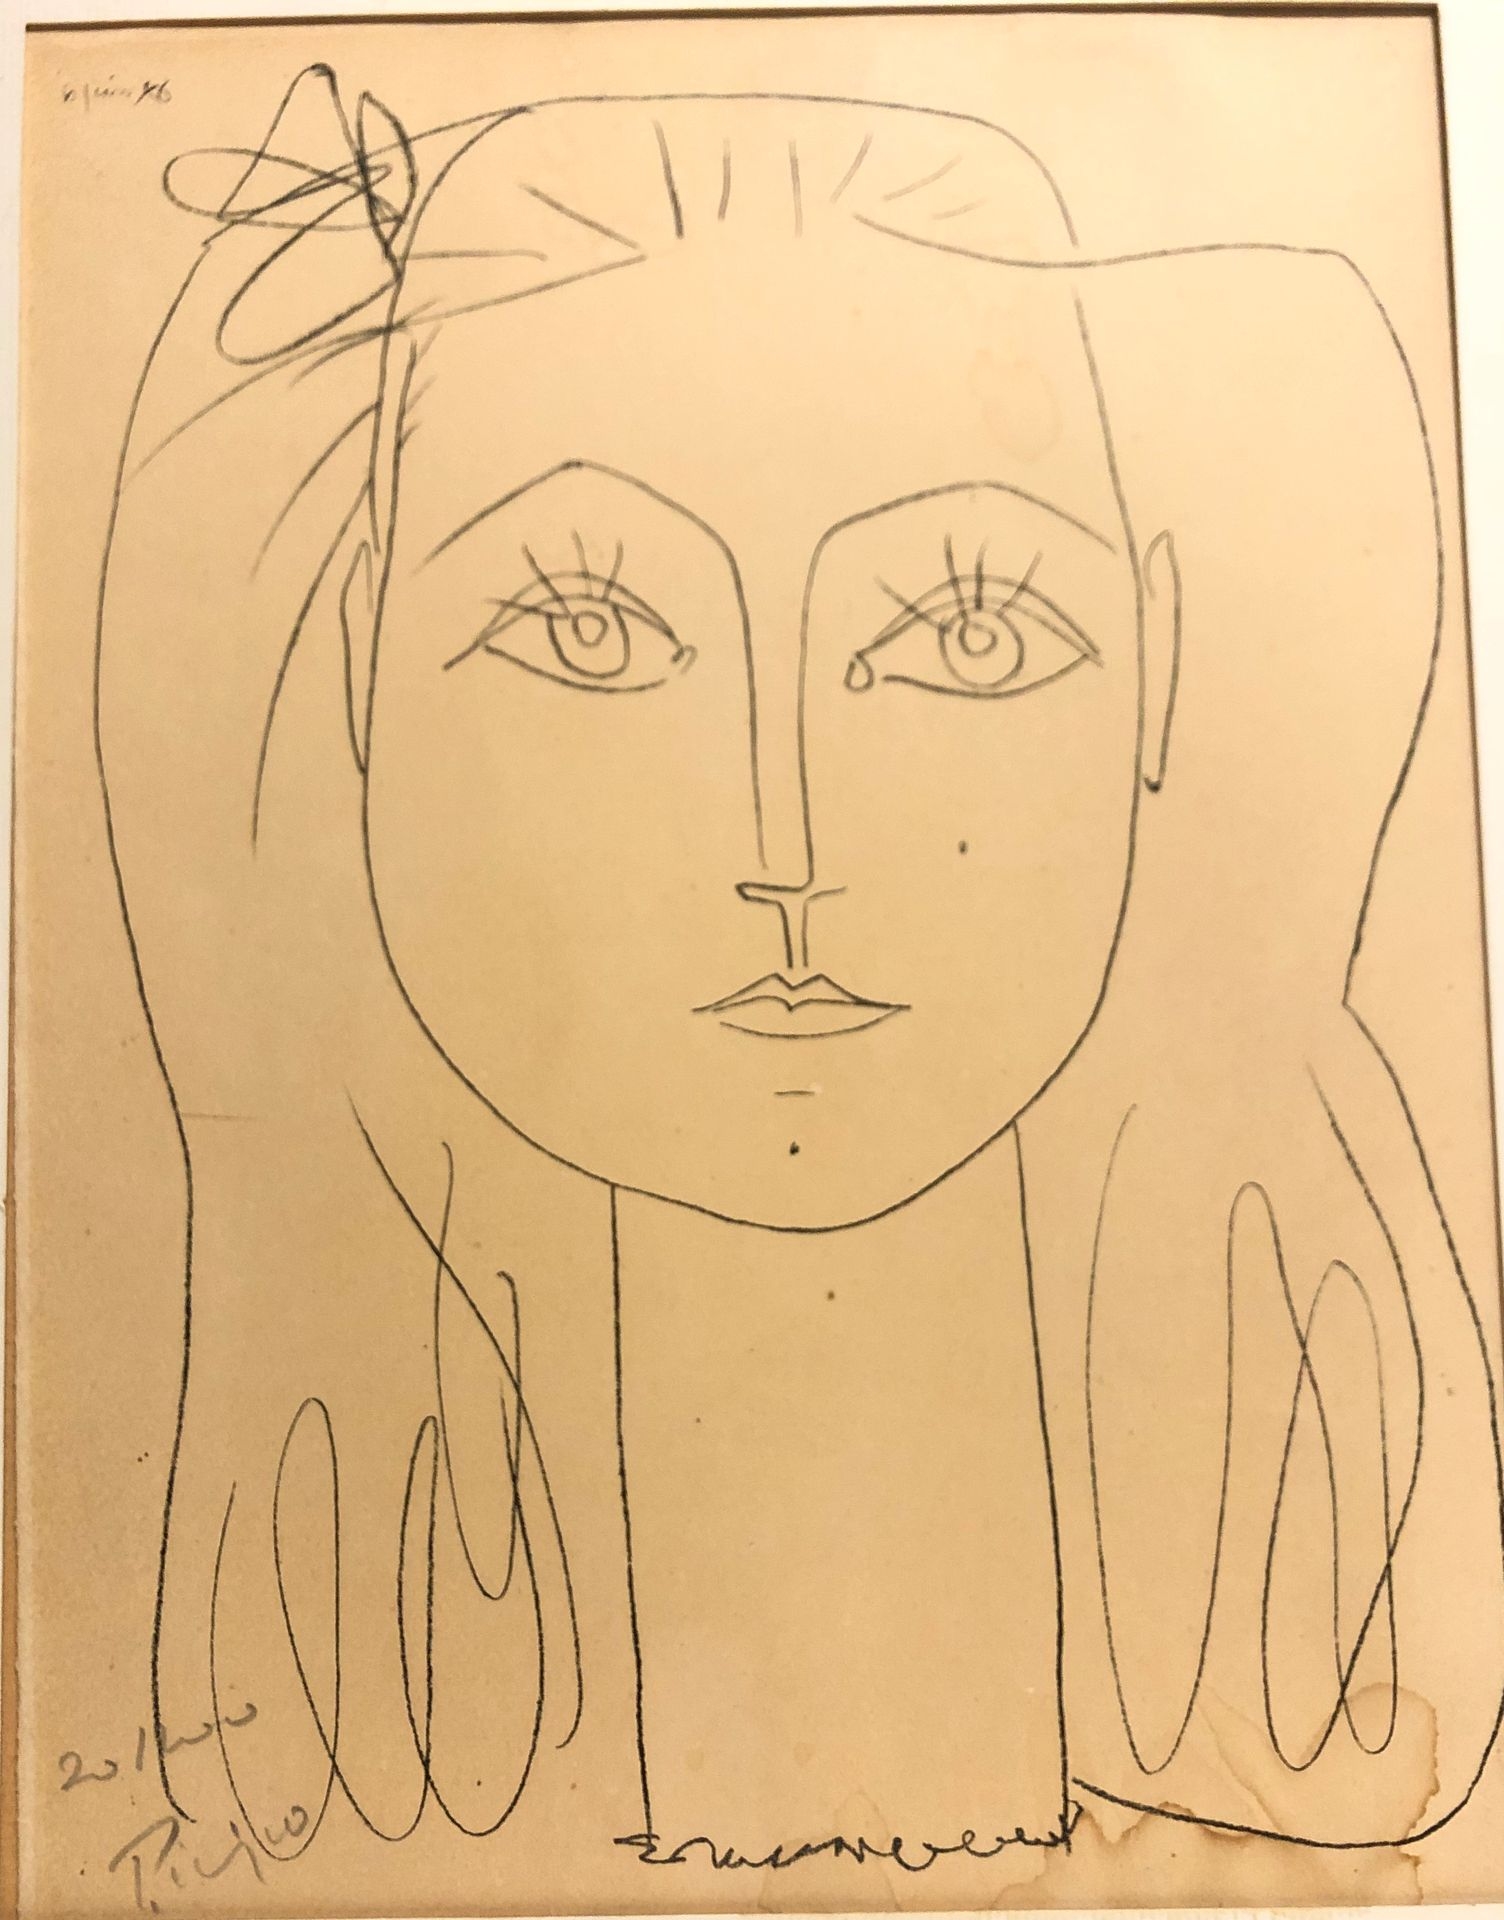 Portrait of Françoise Gilot by Pablo Picasso